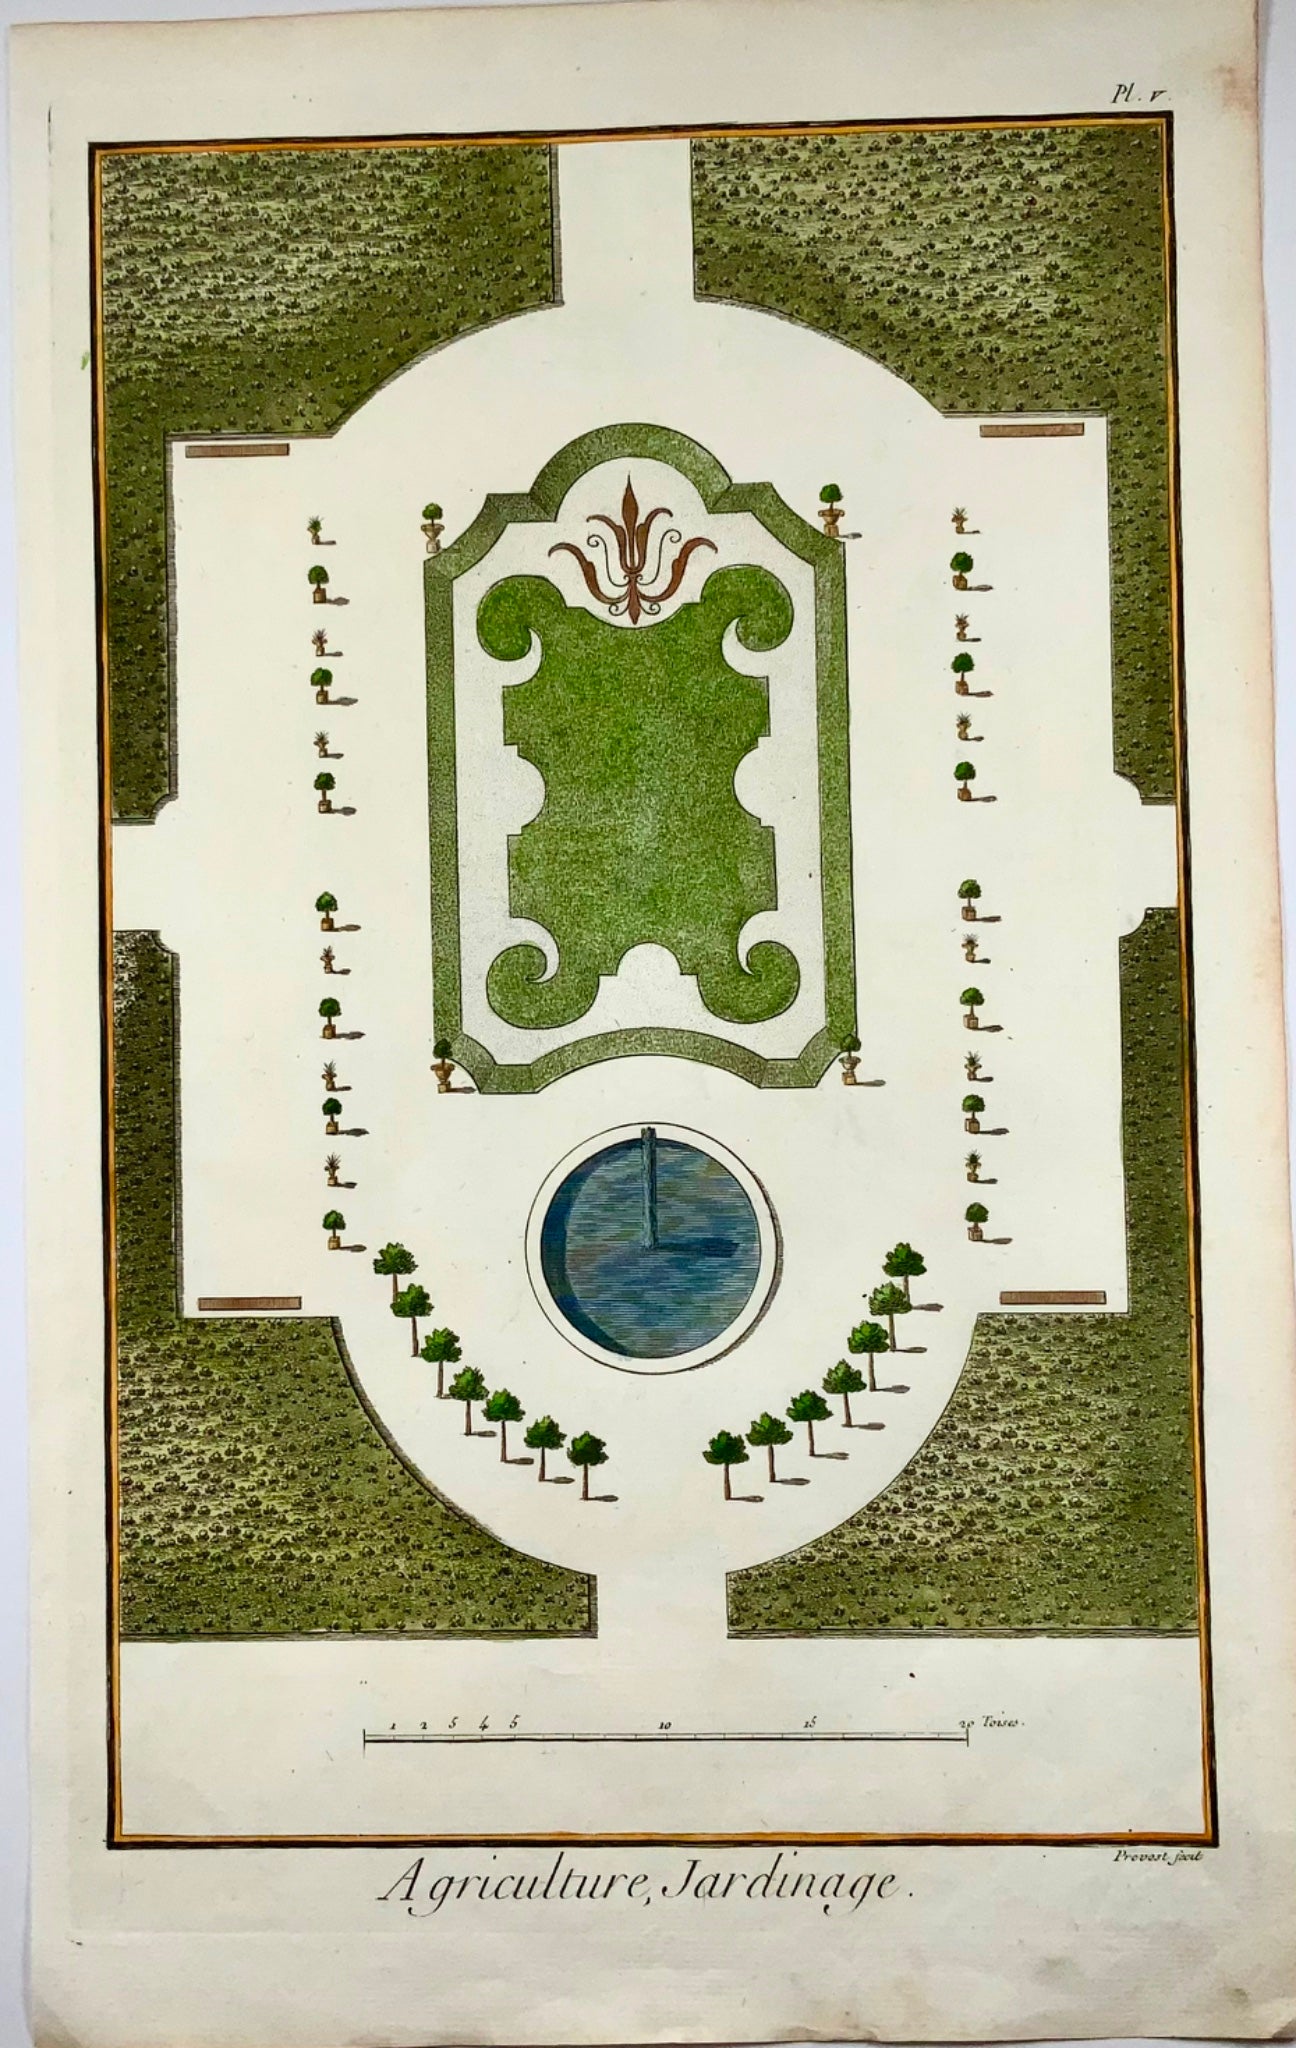 1777 Garden design, architecture, large folio, Diderot, Prevost